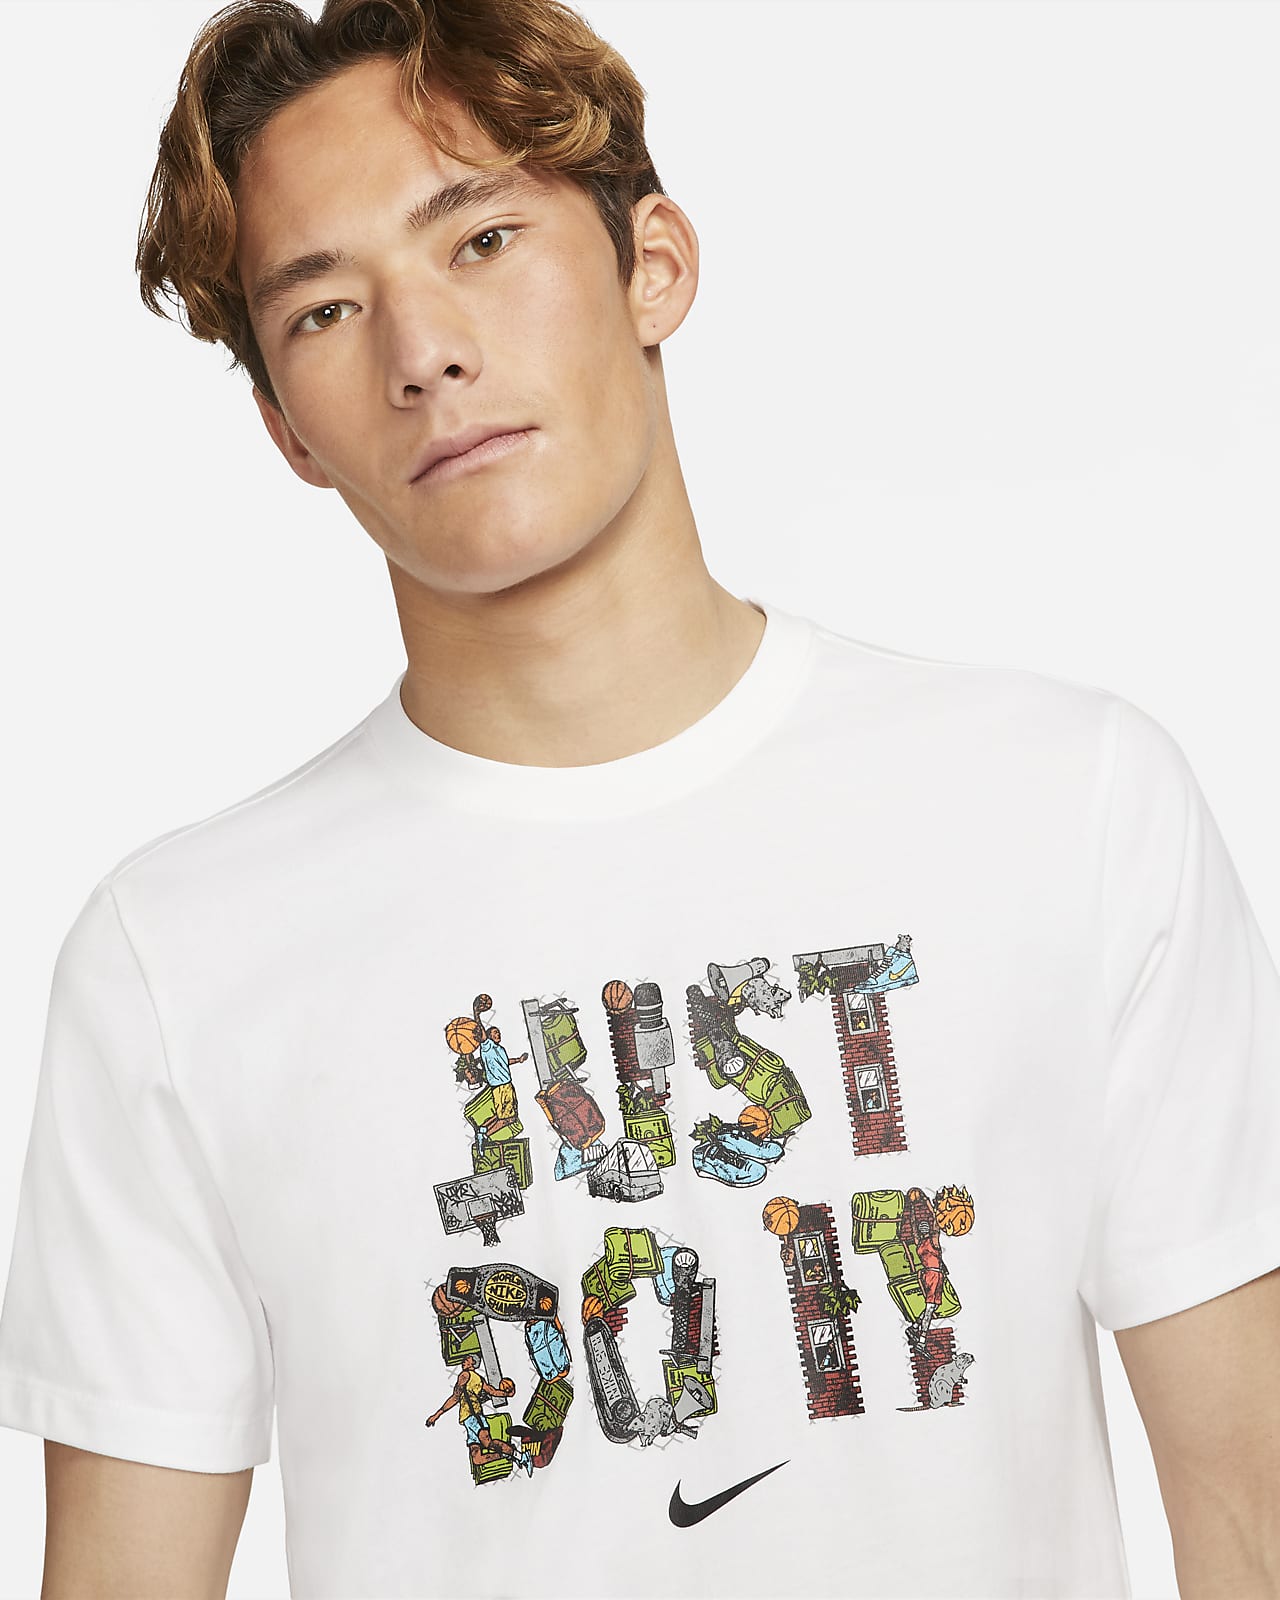 Nike公式 ナイキ Just Do It メンズ バスケットボール Tシャツ オンラインストア 通販サイト